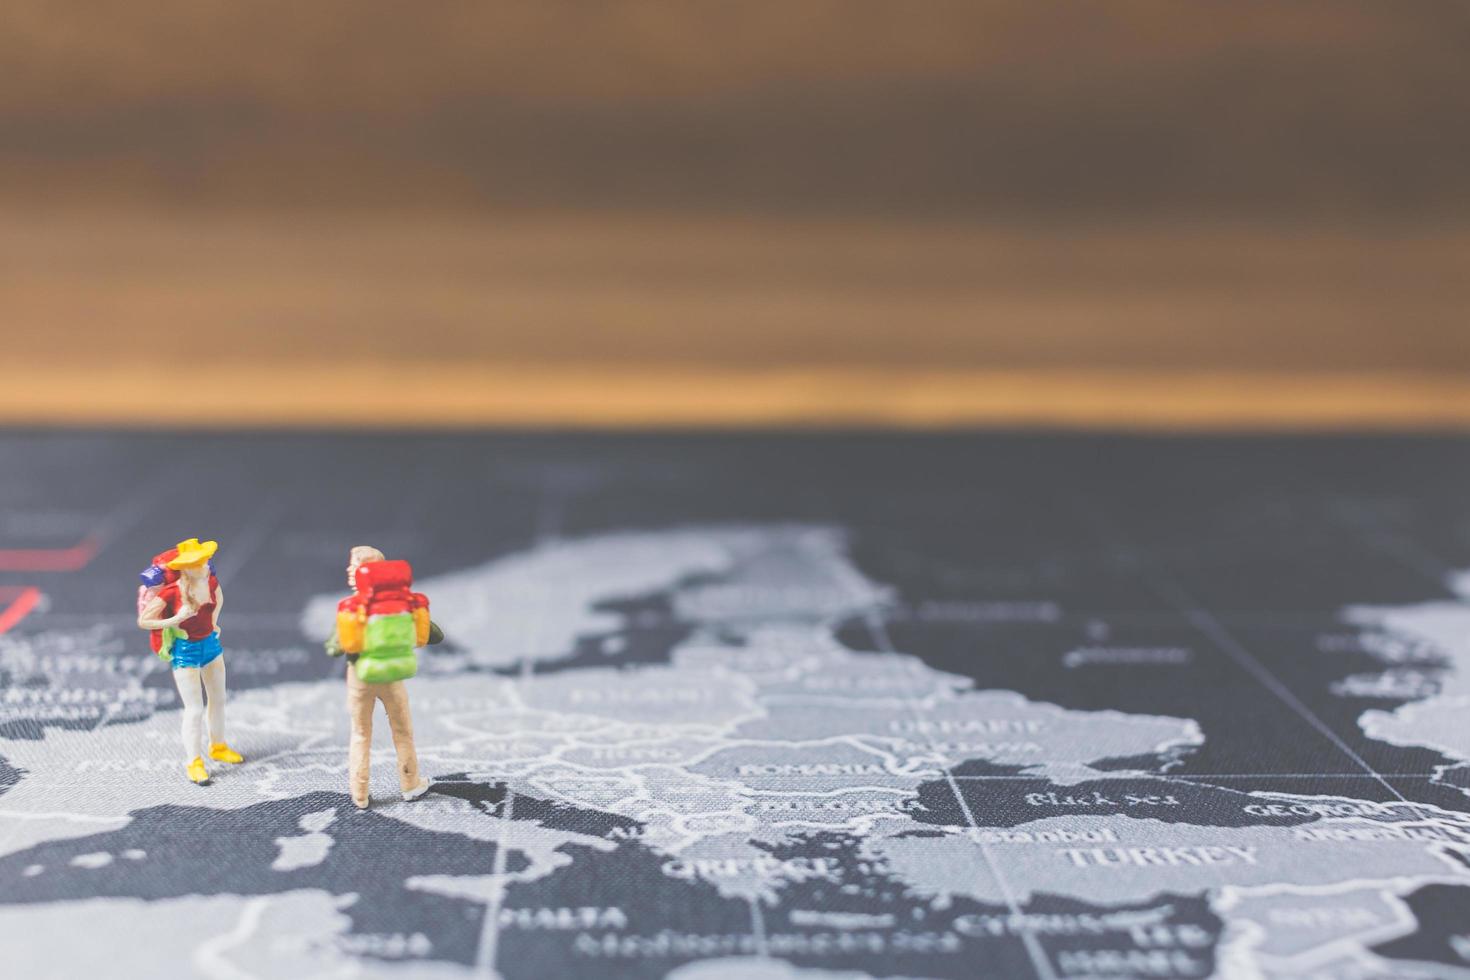 Miniatur-Rucksacktouristen, die auf einer Weltkarte, einem Tourismus- und Reisekonzept spazieren gehen foto